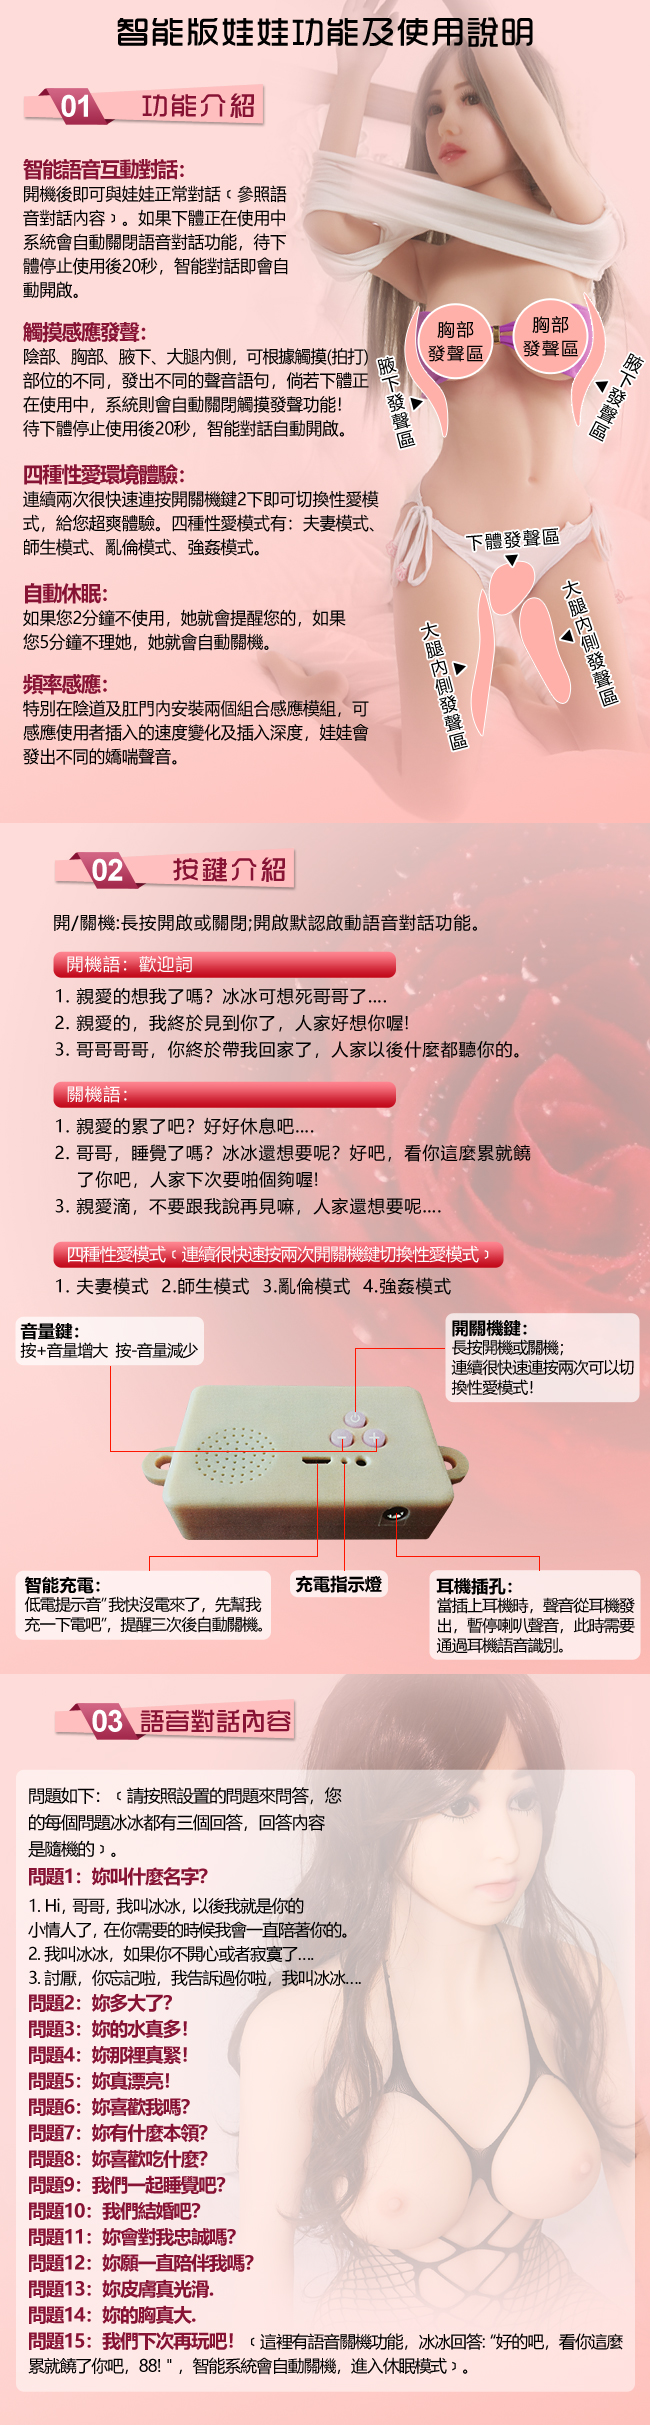 《 凌薇 Ling Wei - 輕熟女郎 》全實體矽膠真人智能版愛娃 5大特點+5種互動功能﹝165cm / 32kg﹞